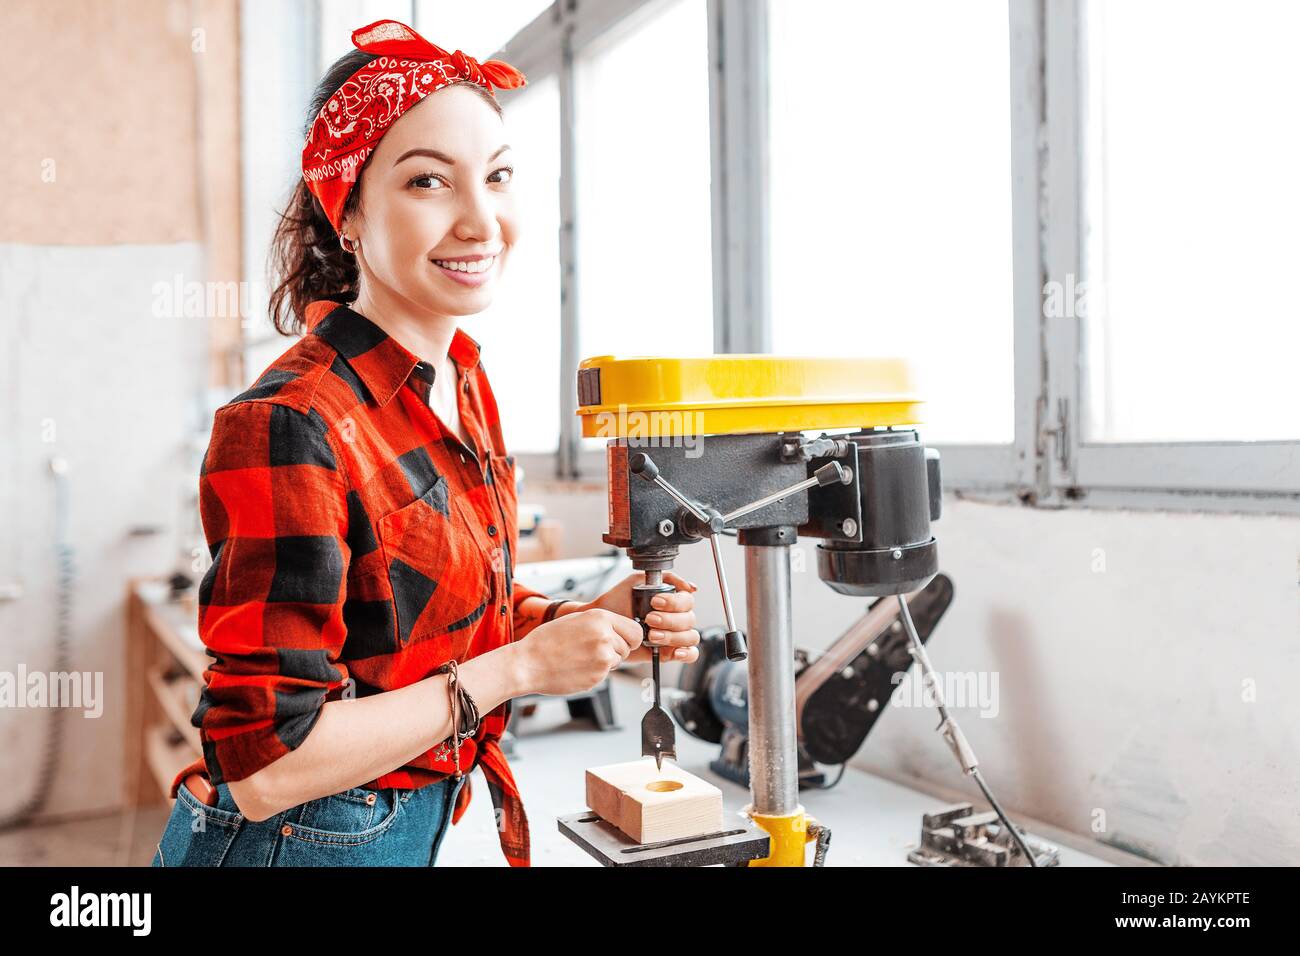 Eine starke und unabhängige Asiatin arbeitet an einer Bohrmaschine in einer Fabrik oder Werkstatt. Konzept mit blauem Kragen Stockfoto